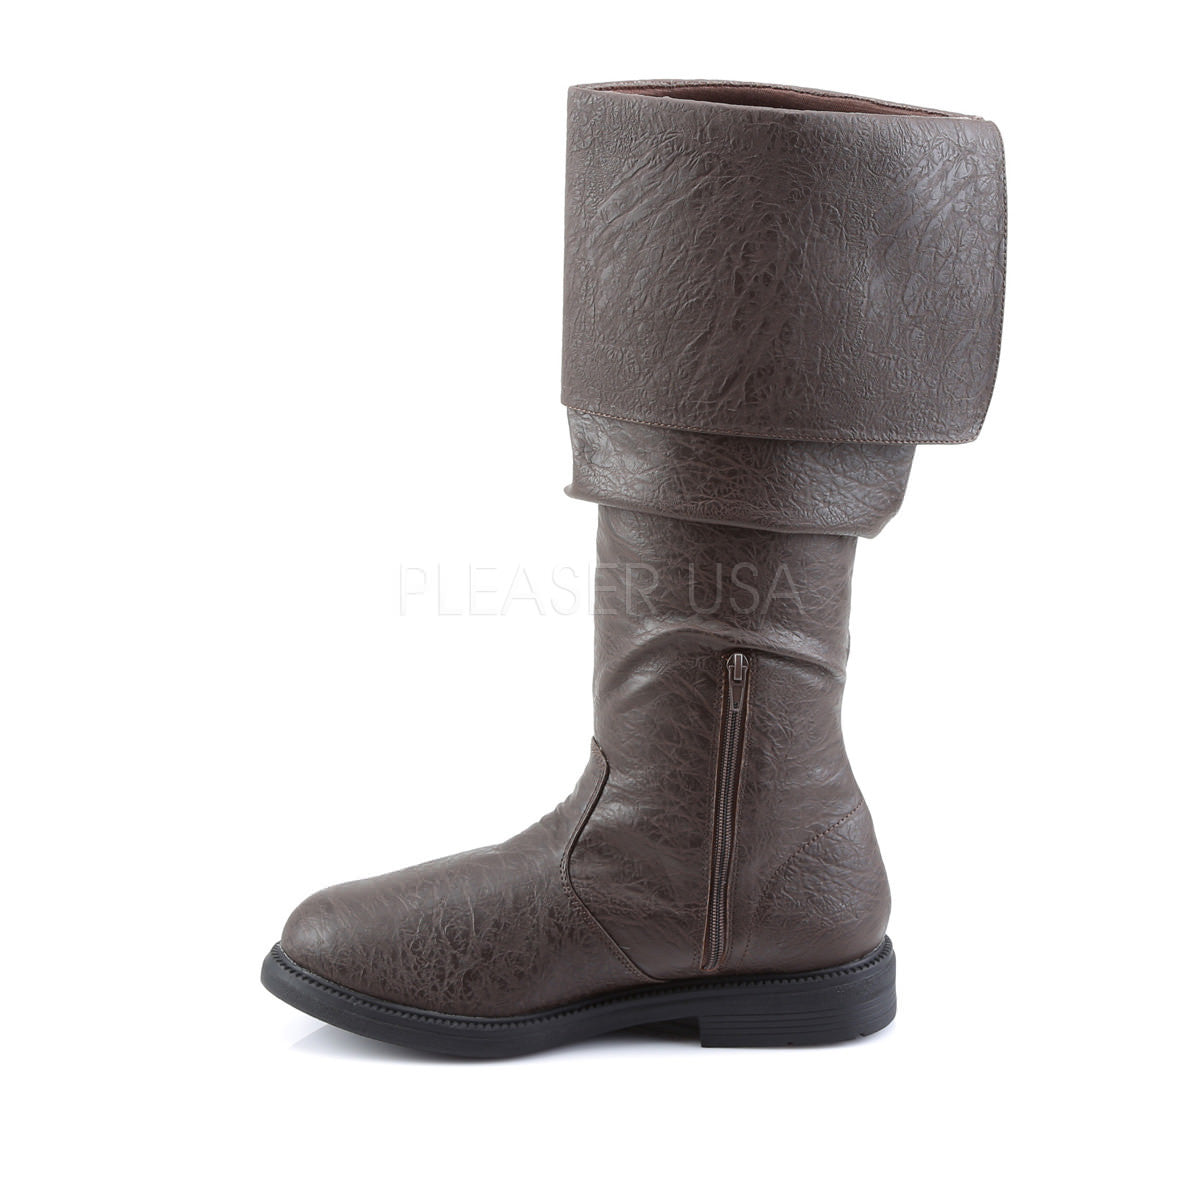 Men's Brown Renaissance Medieval Pirate Boots